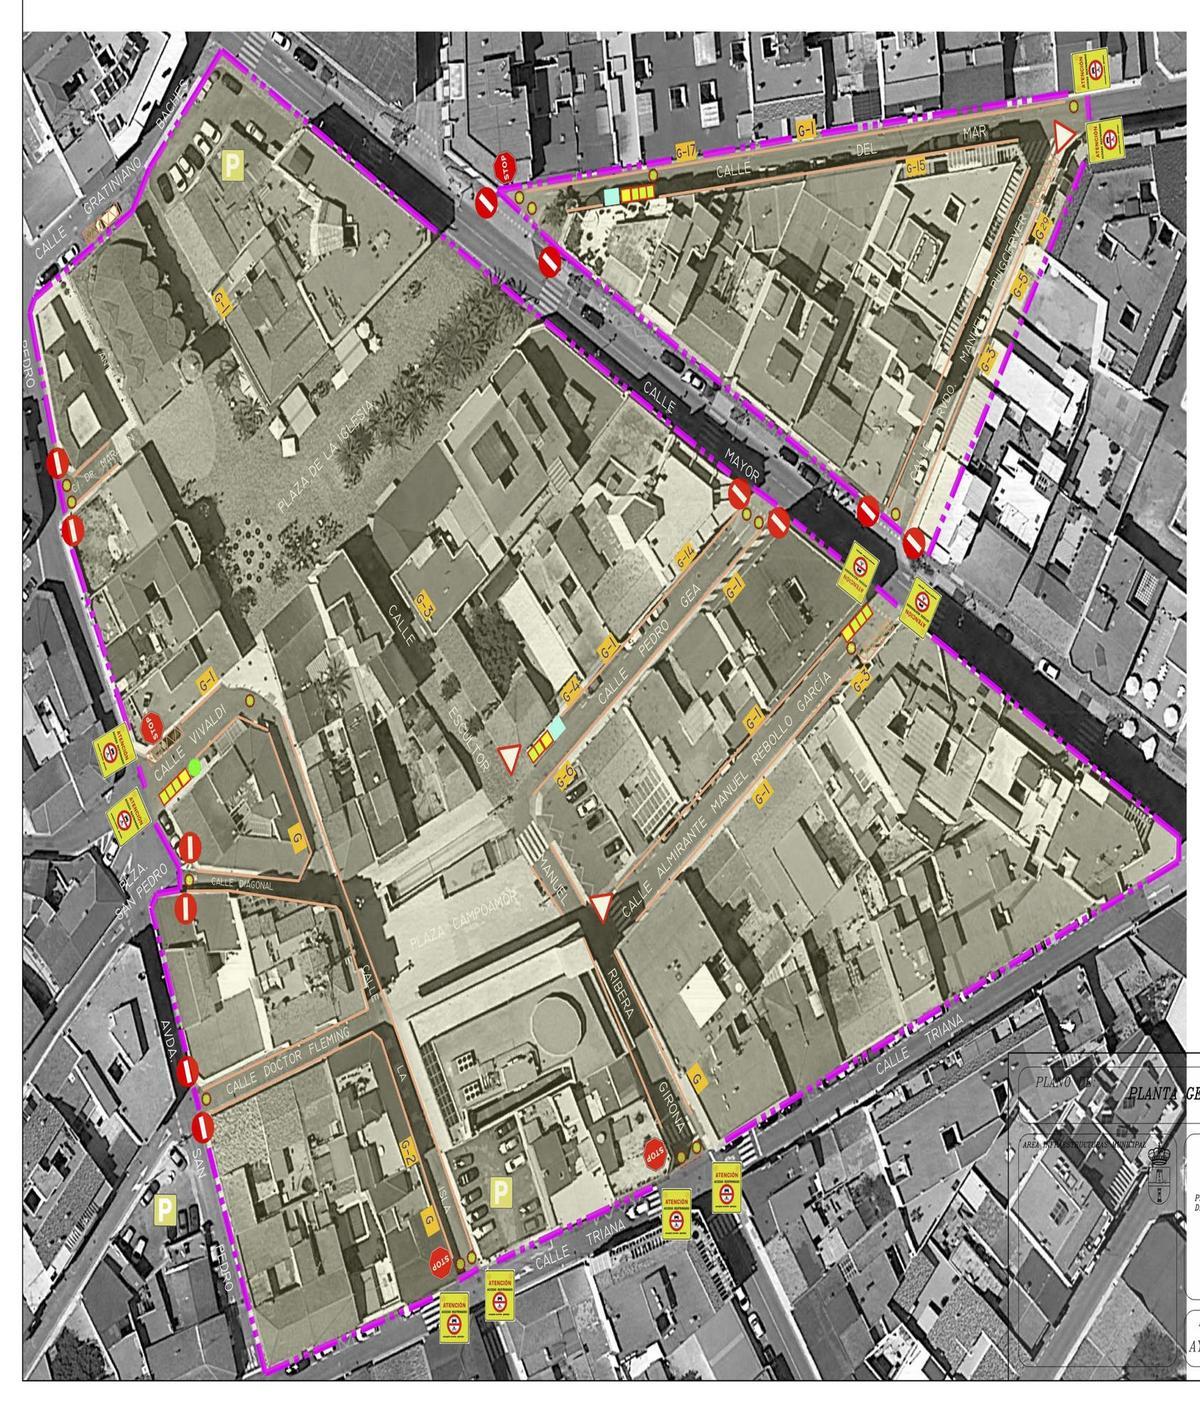 Ámbito en el que se ha llevado a cabo la peatonalización desde principios de noviembre en el centro del casco urbano